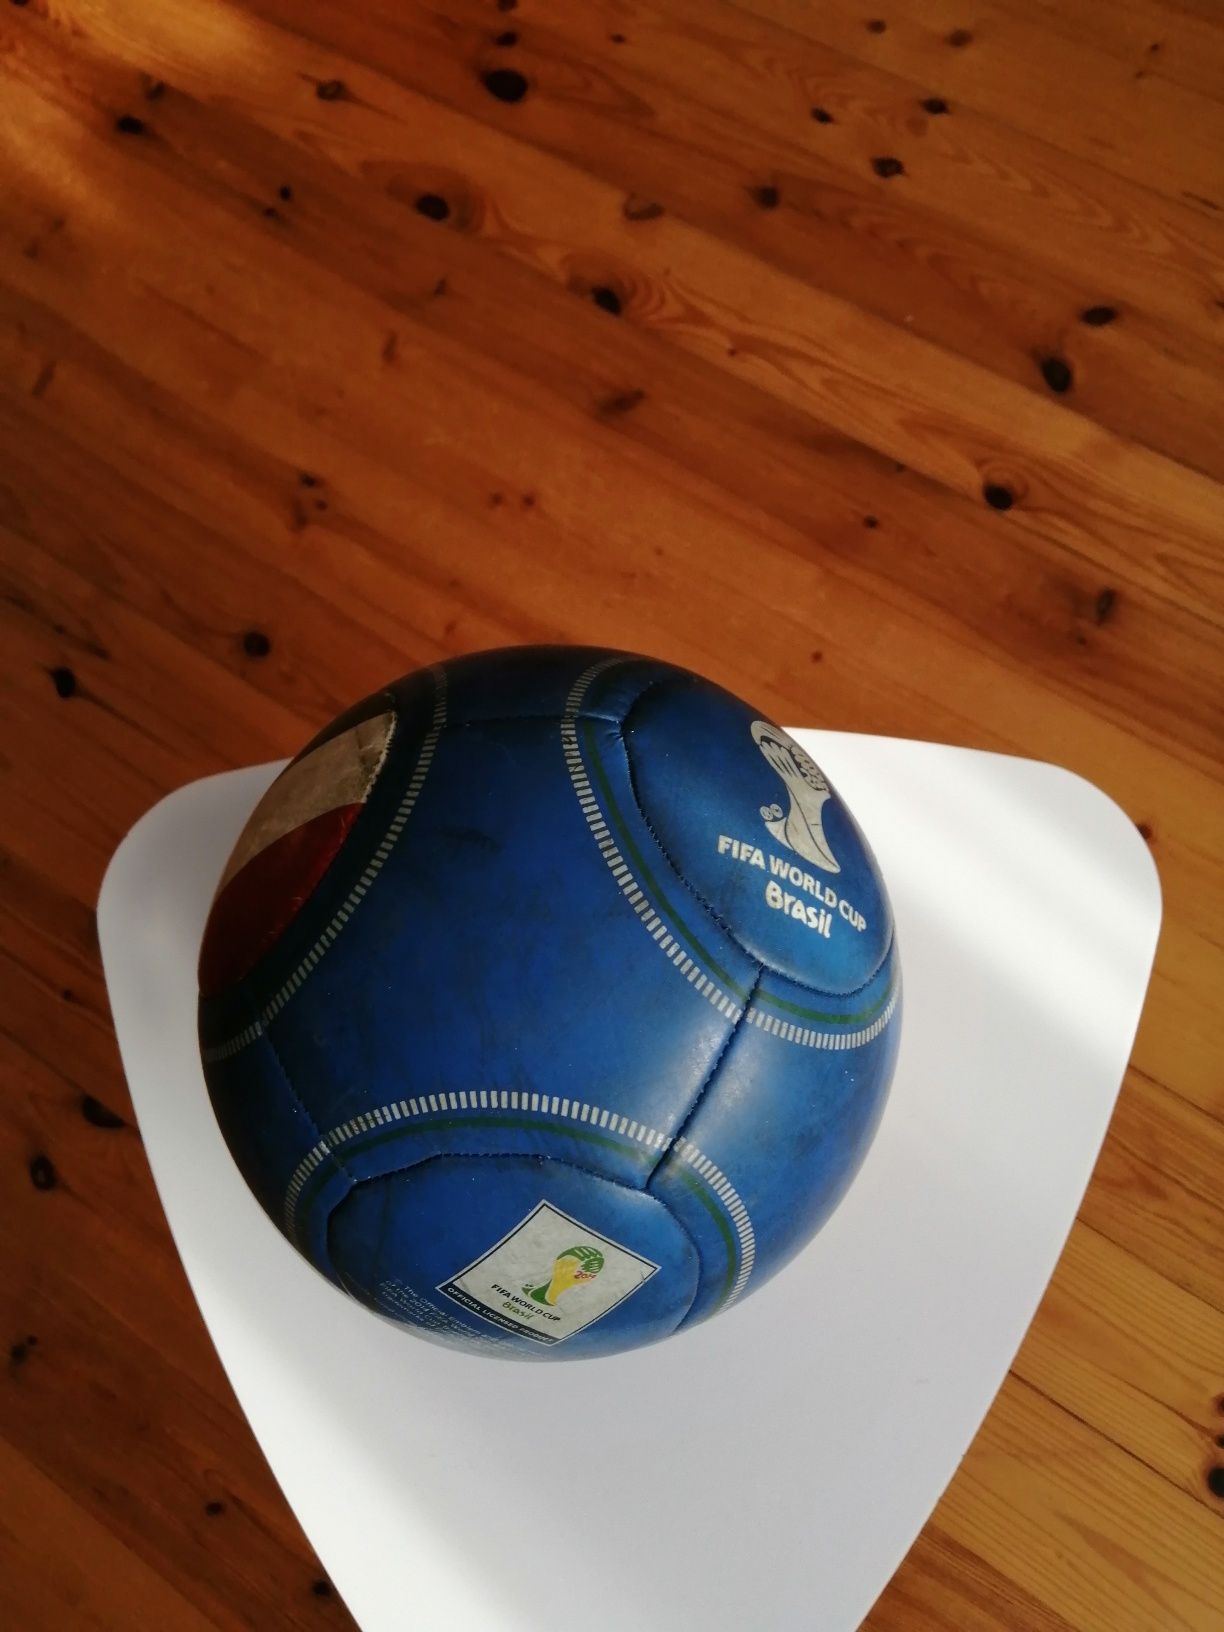 Piłka nożna z logo Mistrzostw Świata